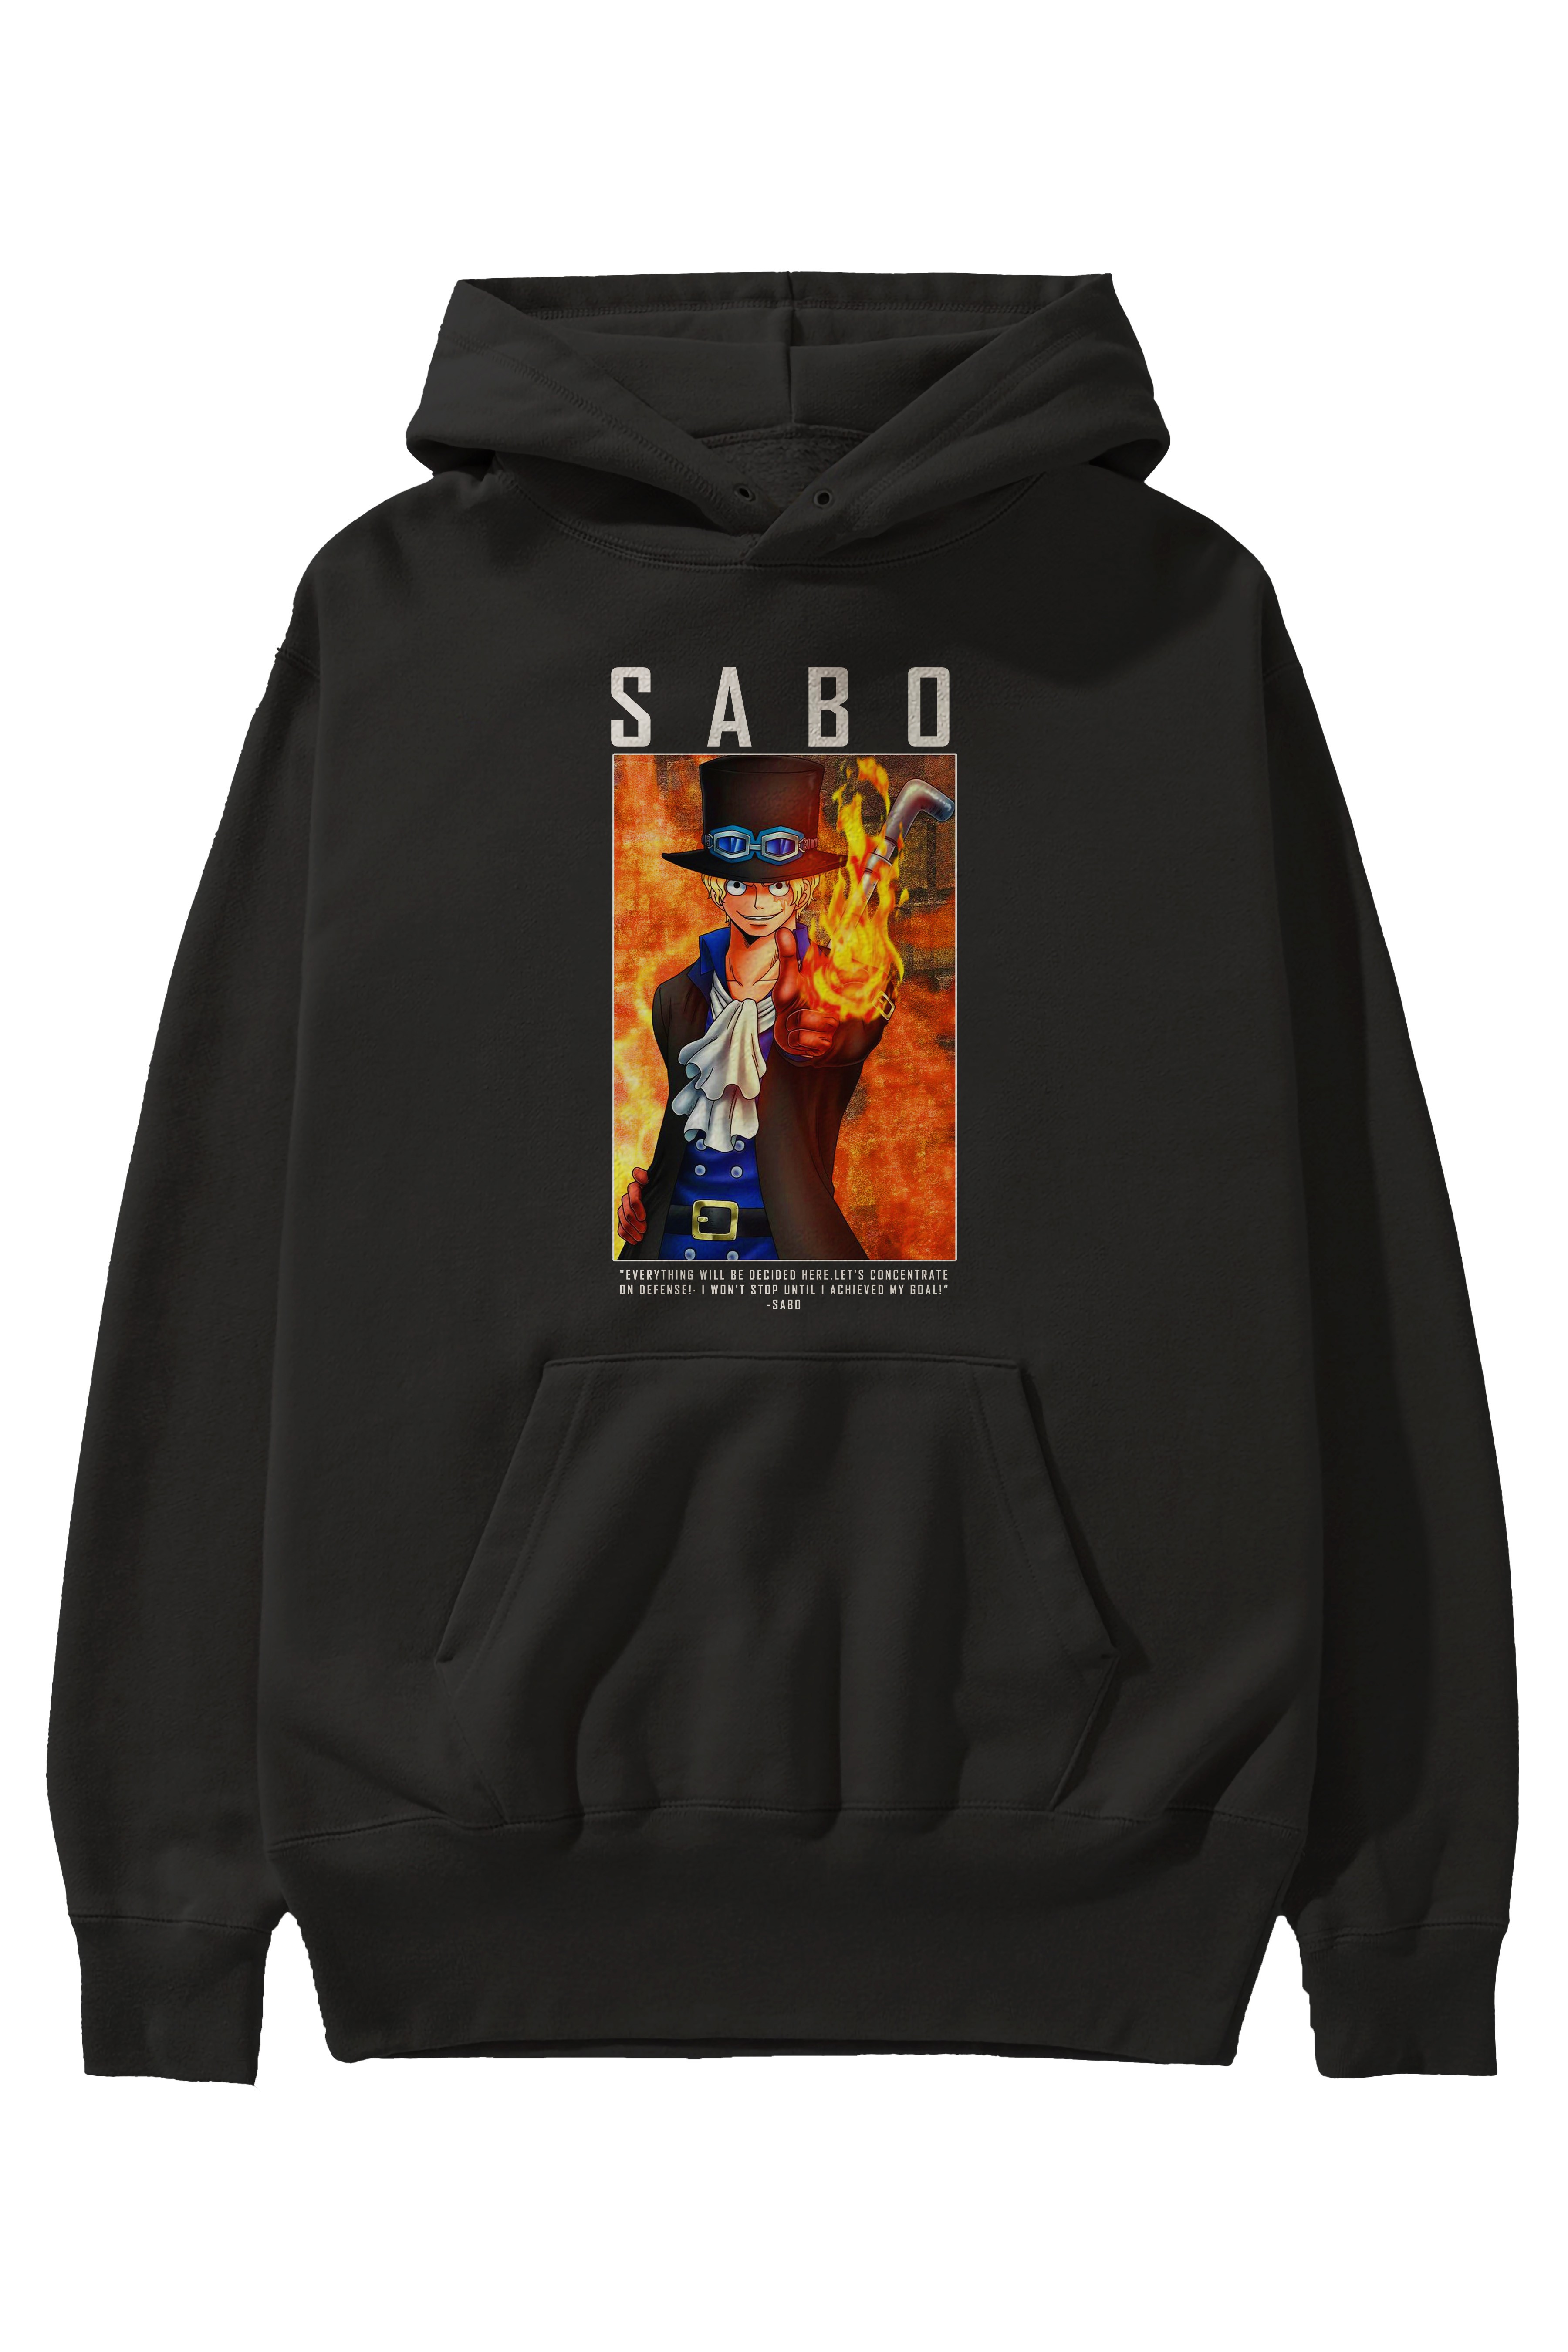 Sabo Anime Ön Baskılı Hoodie Oversize Kapüşonlu Sweatshirt Erkek Kadın Unisex